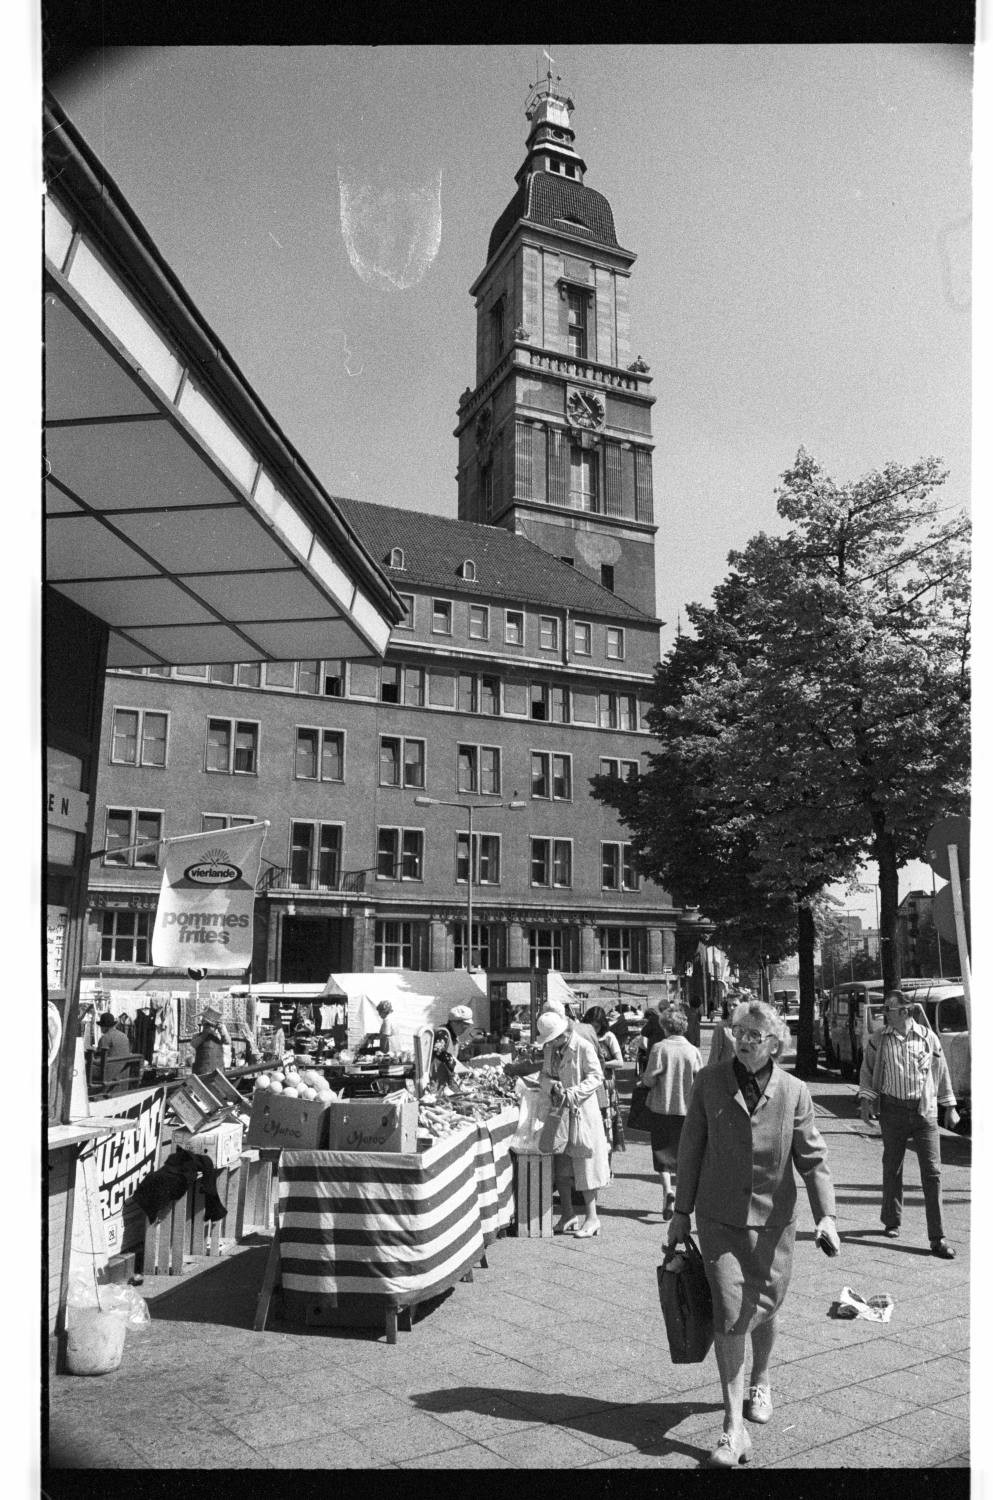 Kleinbildnegative: Wochenmarkt, Breslauer Platz, 1980 (Museen Tempelhof-Schöneberg/Jürgen Henschel RR-F)